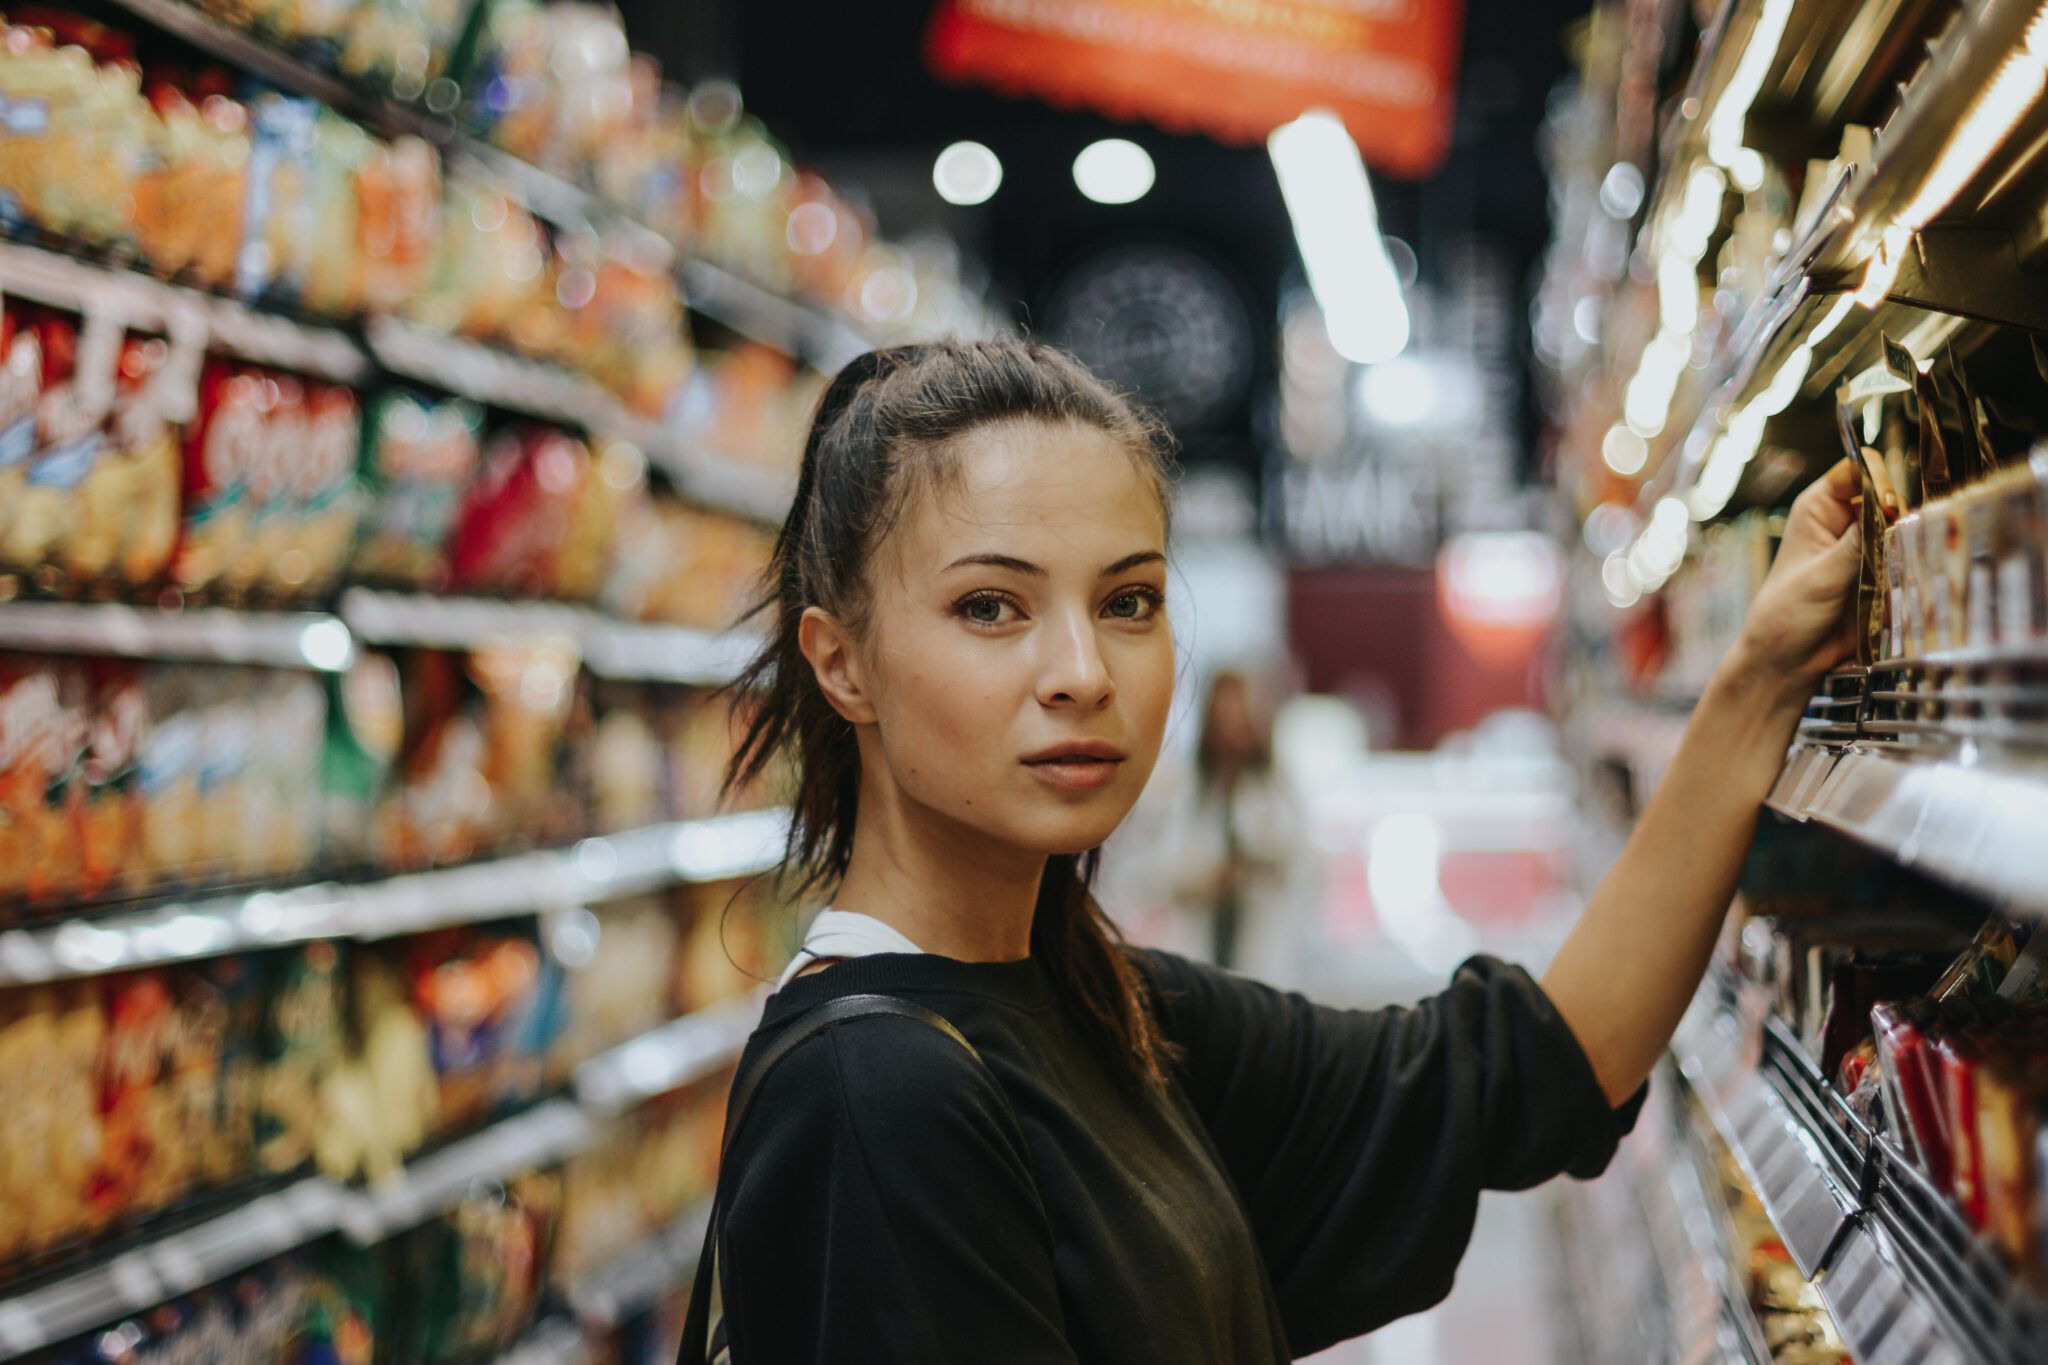 vrouw in supermarkt